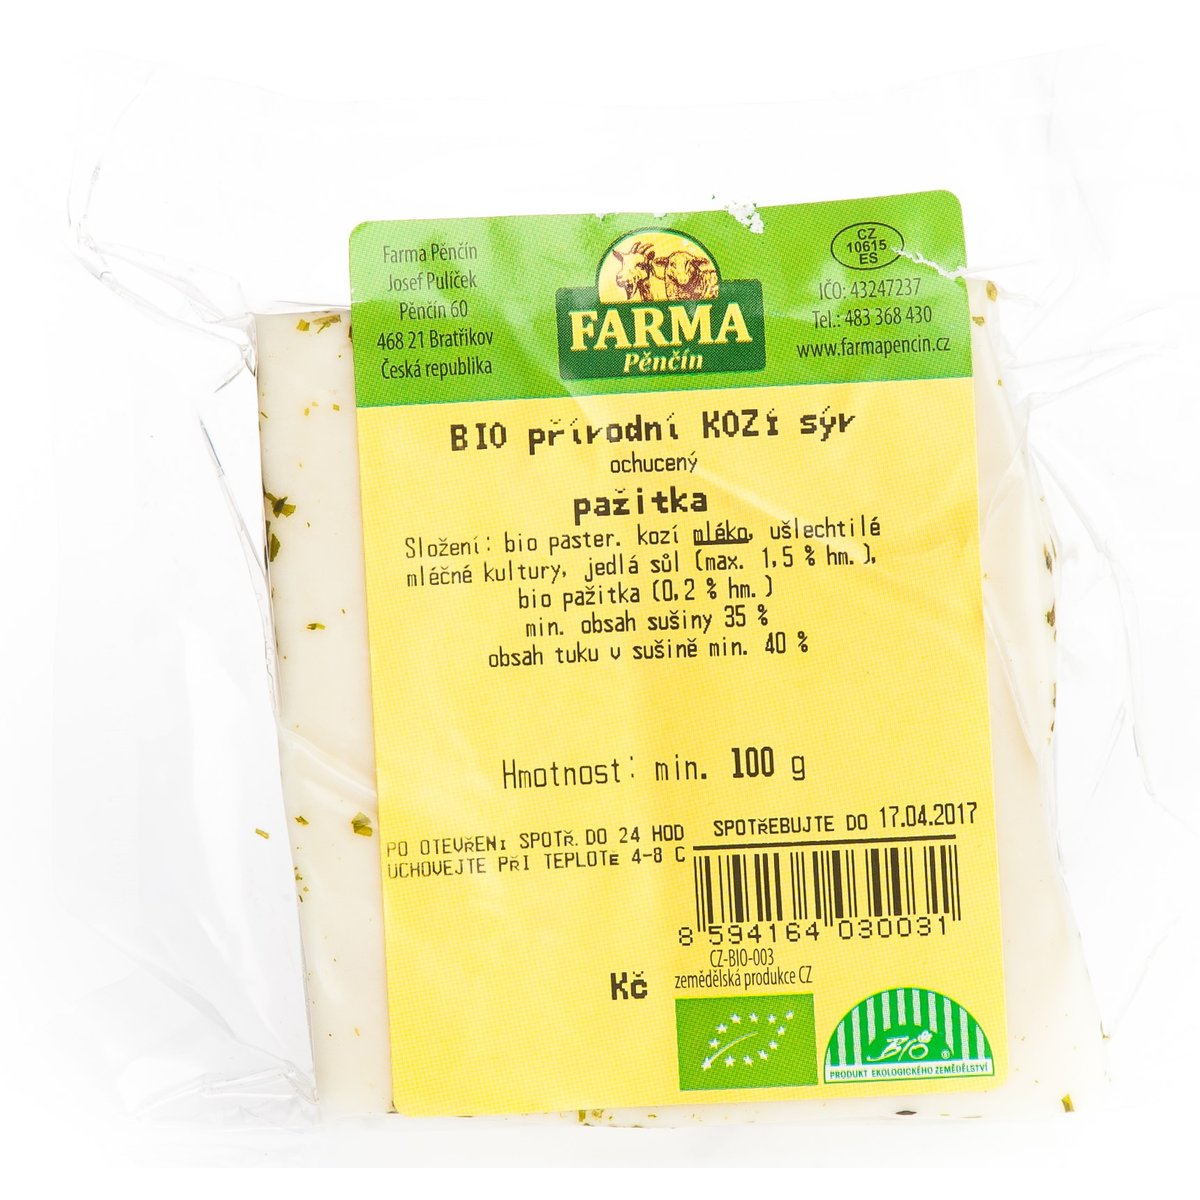 Farma Pěnčín BIO kozí sýr s pažitkou